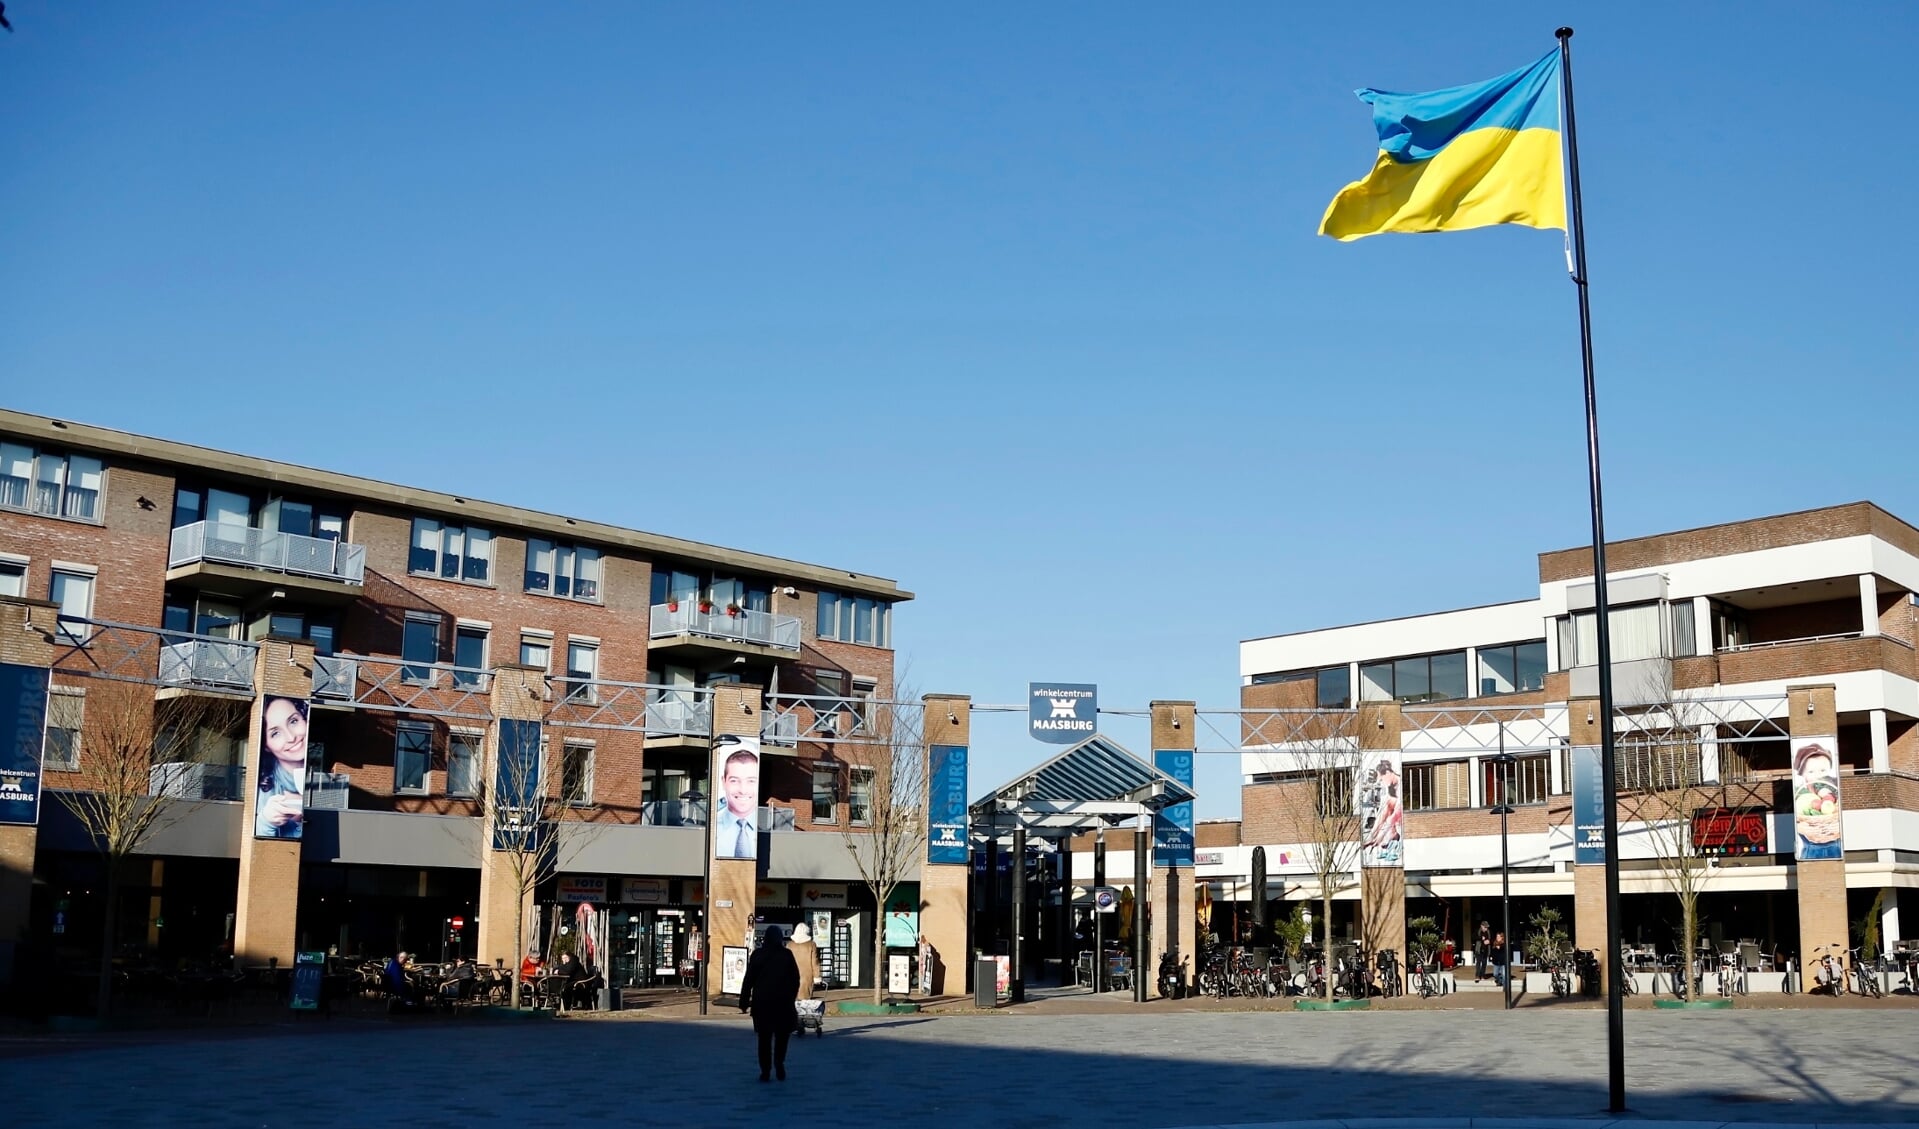 De gemeente toont solidariteit met het Oost-Europese land door de Oekraïense vlag te laten wapperen op het Louis Jansenplein in Cuijk. (Foto: SK-Media)